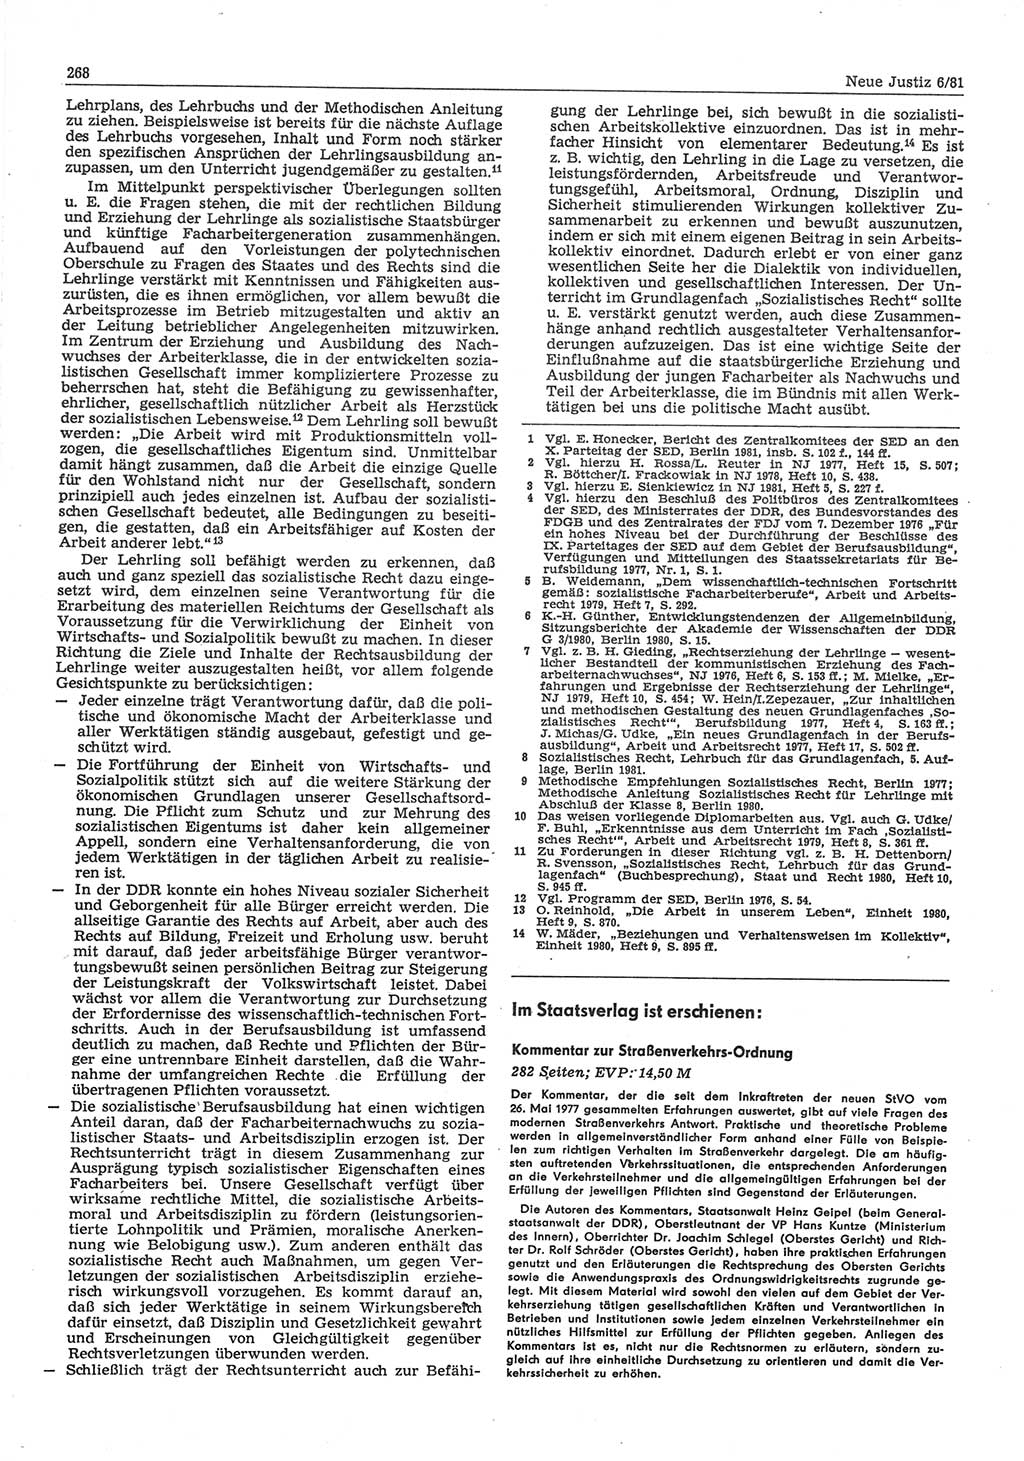 Neue Justiz (NJ), Zeitschrift für sozialistisches Recht und Gesetzlichkeit [Deutsche Demokratische Republik (DDR)], 35. Jahrgang 1981, Seite 268 (NJ DDR 1981, S. 268)